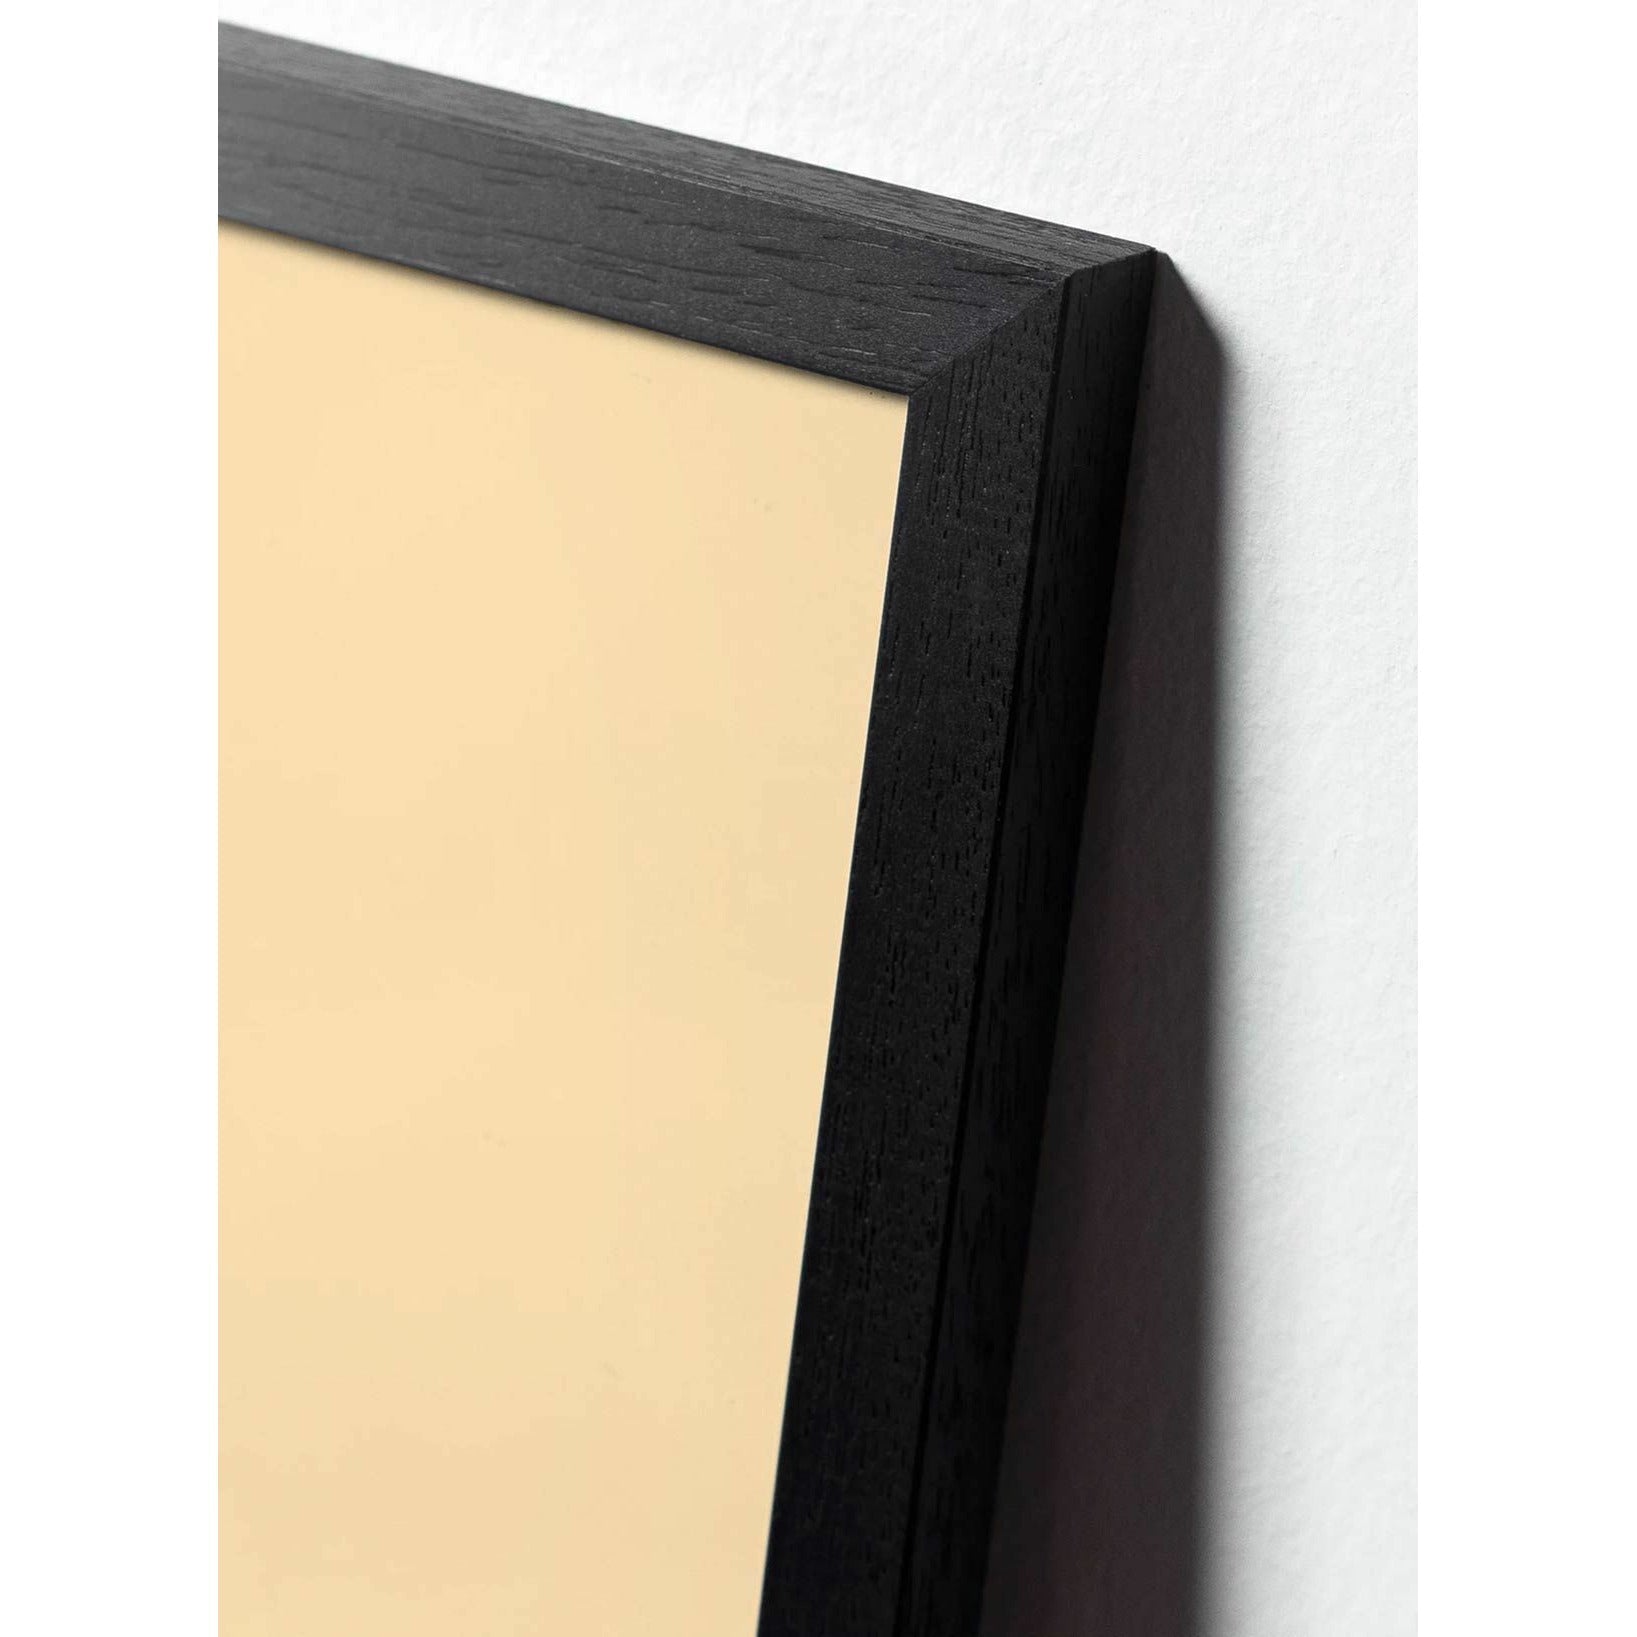 Póster de línea Swan de creación, marco en madera lacada negra A5, fondo blanco